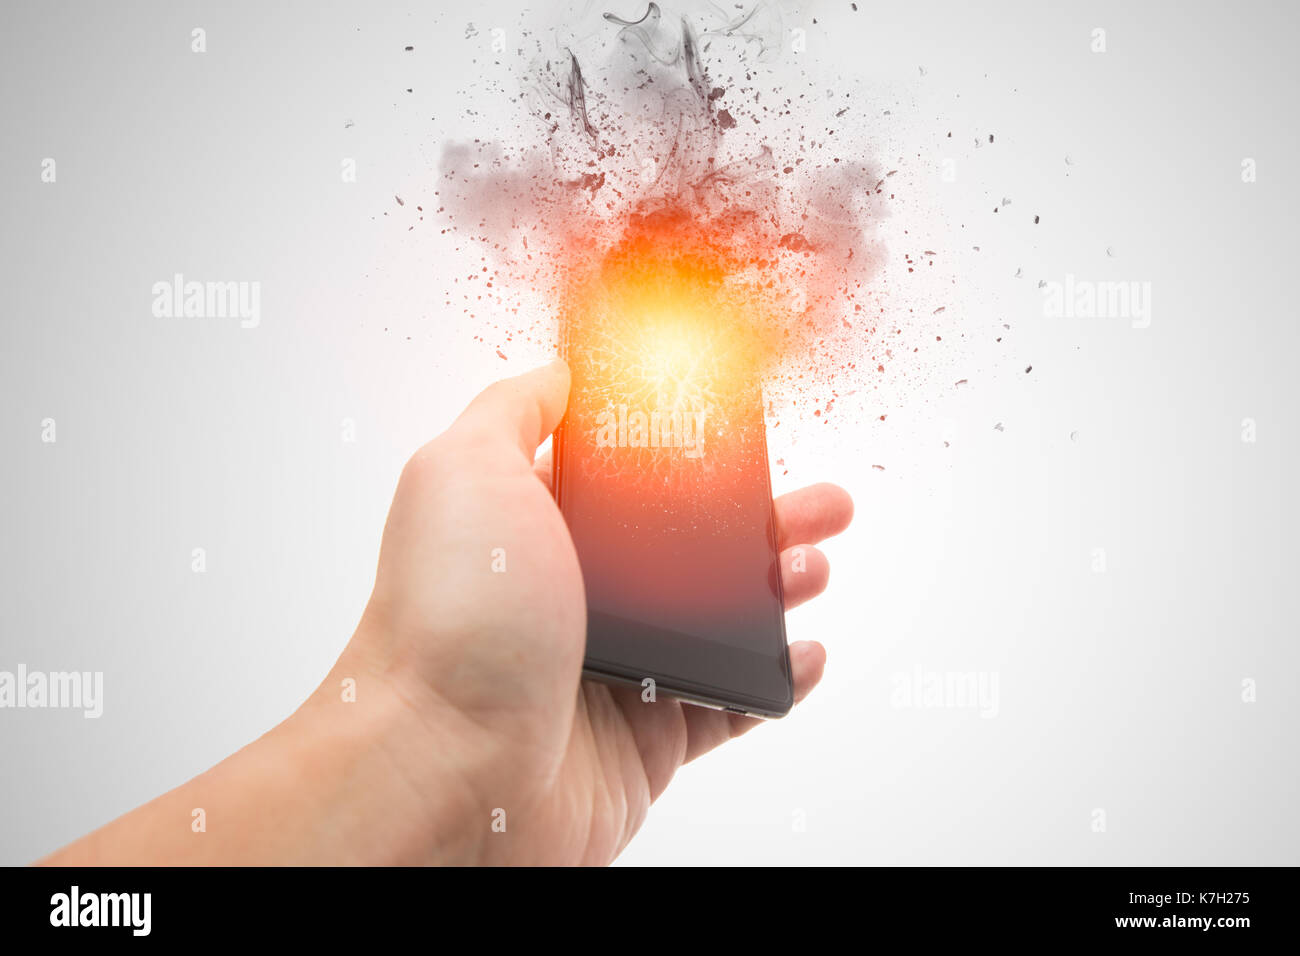 Esplosione di smartphone, Blow up cellphone batteria esplosiva o telefono cellulare o esplodere raffica burn out smart device con effetto di dispersione. Foto Stock